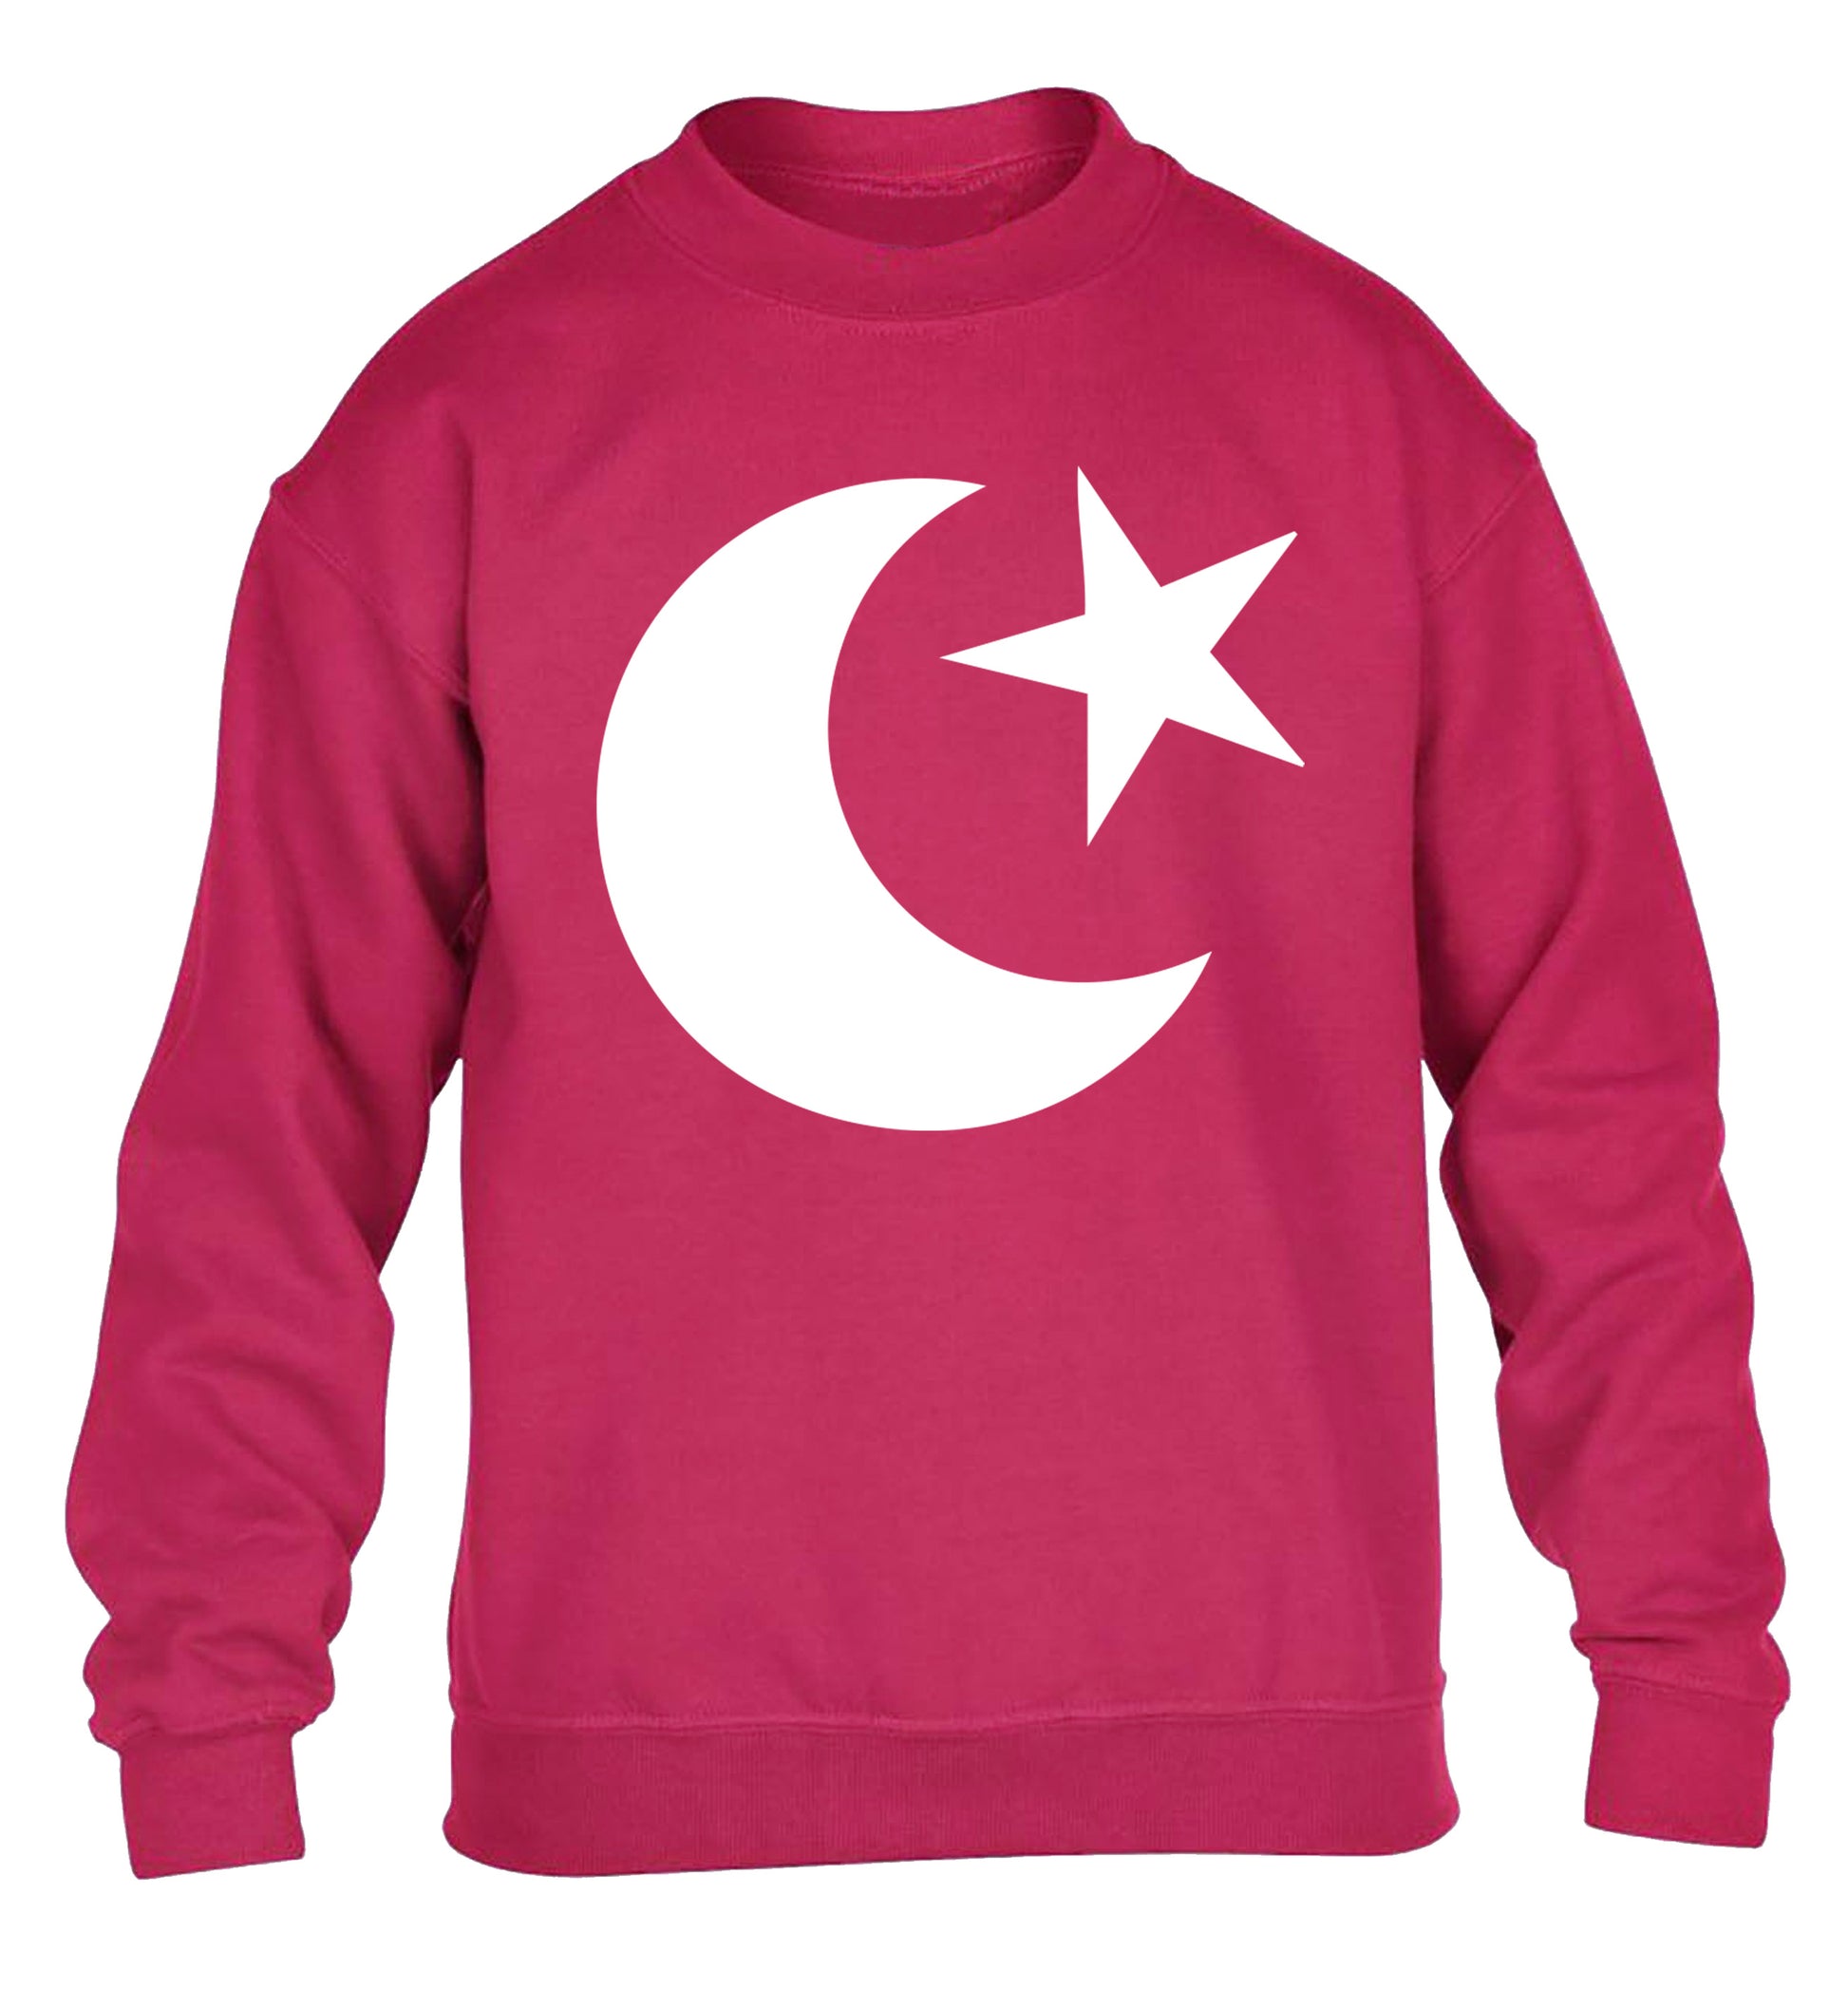 Eid symbol children's pink sweater 12-13 Years